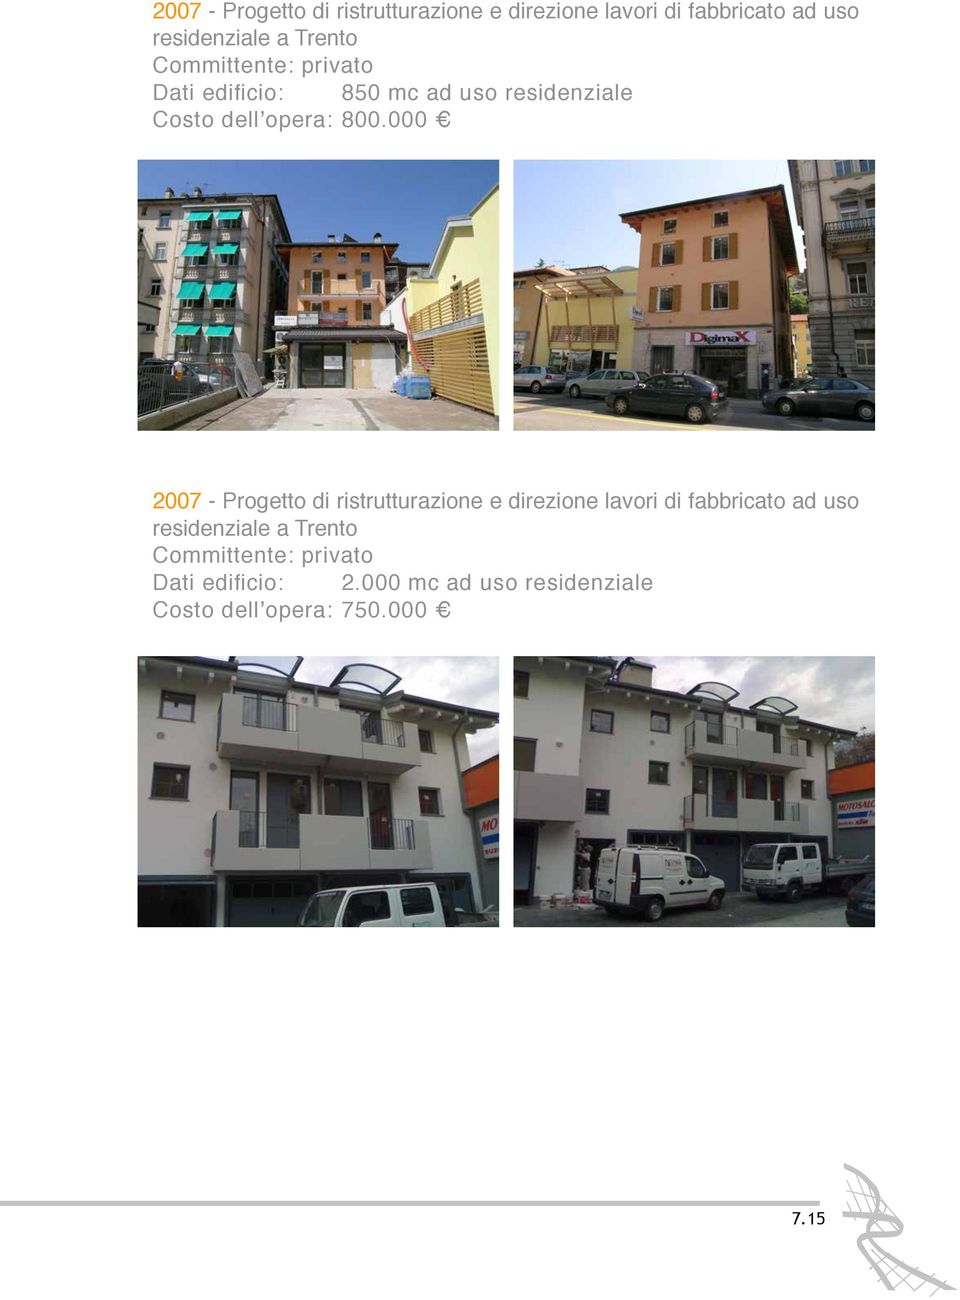 dellʼopera:""800.000  residenziale a Trento Dati edificio:" "2.